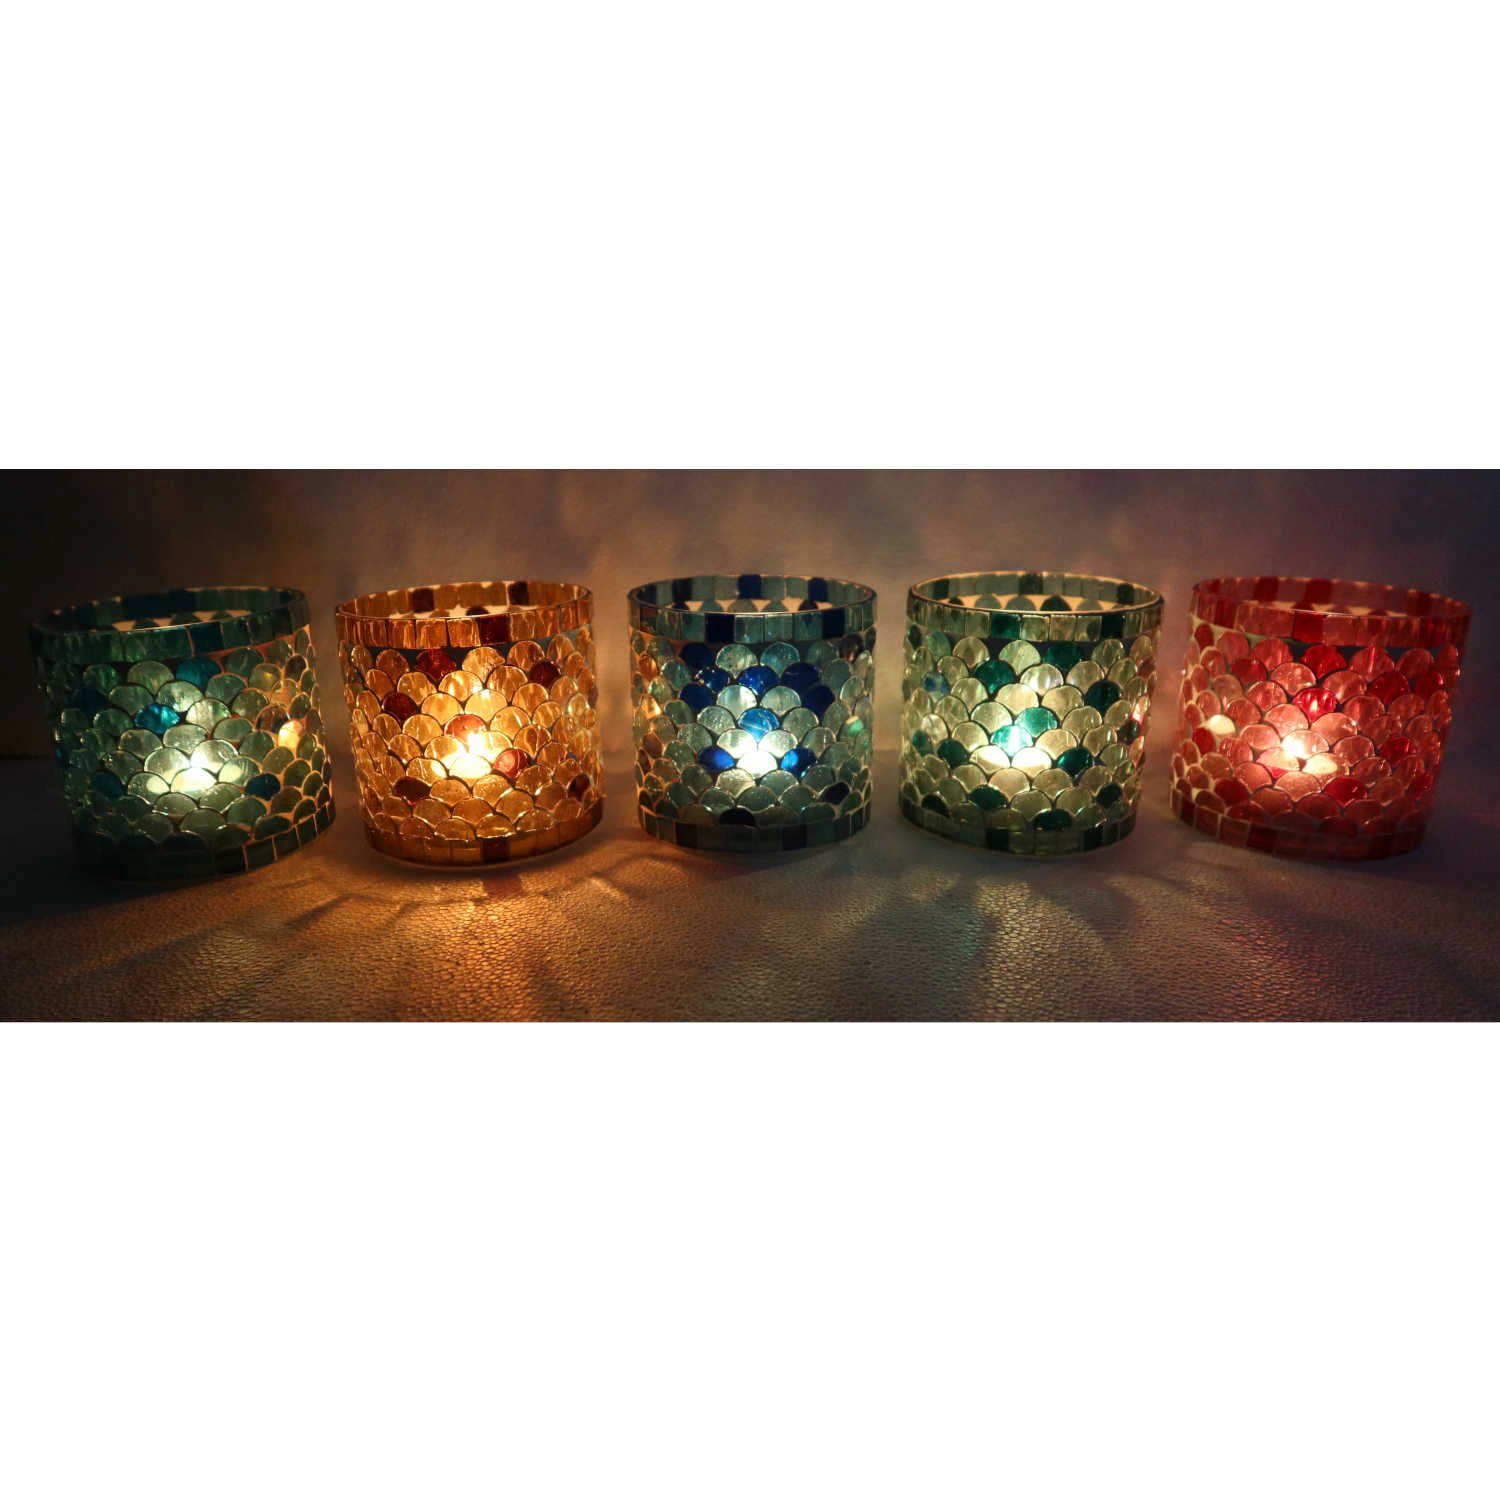 Casa Moro Windlicht Orientalisches Mosaik Windlicht ATHEN M 5ER Set Ø10cm in 5 Farben (Weihnachten Teelichthalter Kerzenständer Glas Kerzenhalter rund, Glaswindlicht in den Farben Blau, Gelb, Rot, Grün, Dunkelblau), marokkanische Kerzenleuchter aus 1001 Nacht, WZ777-M